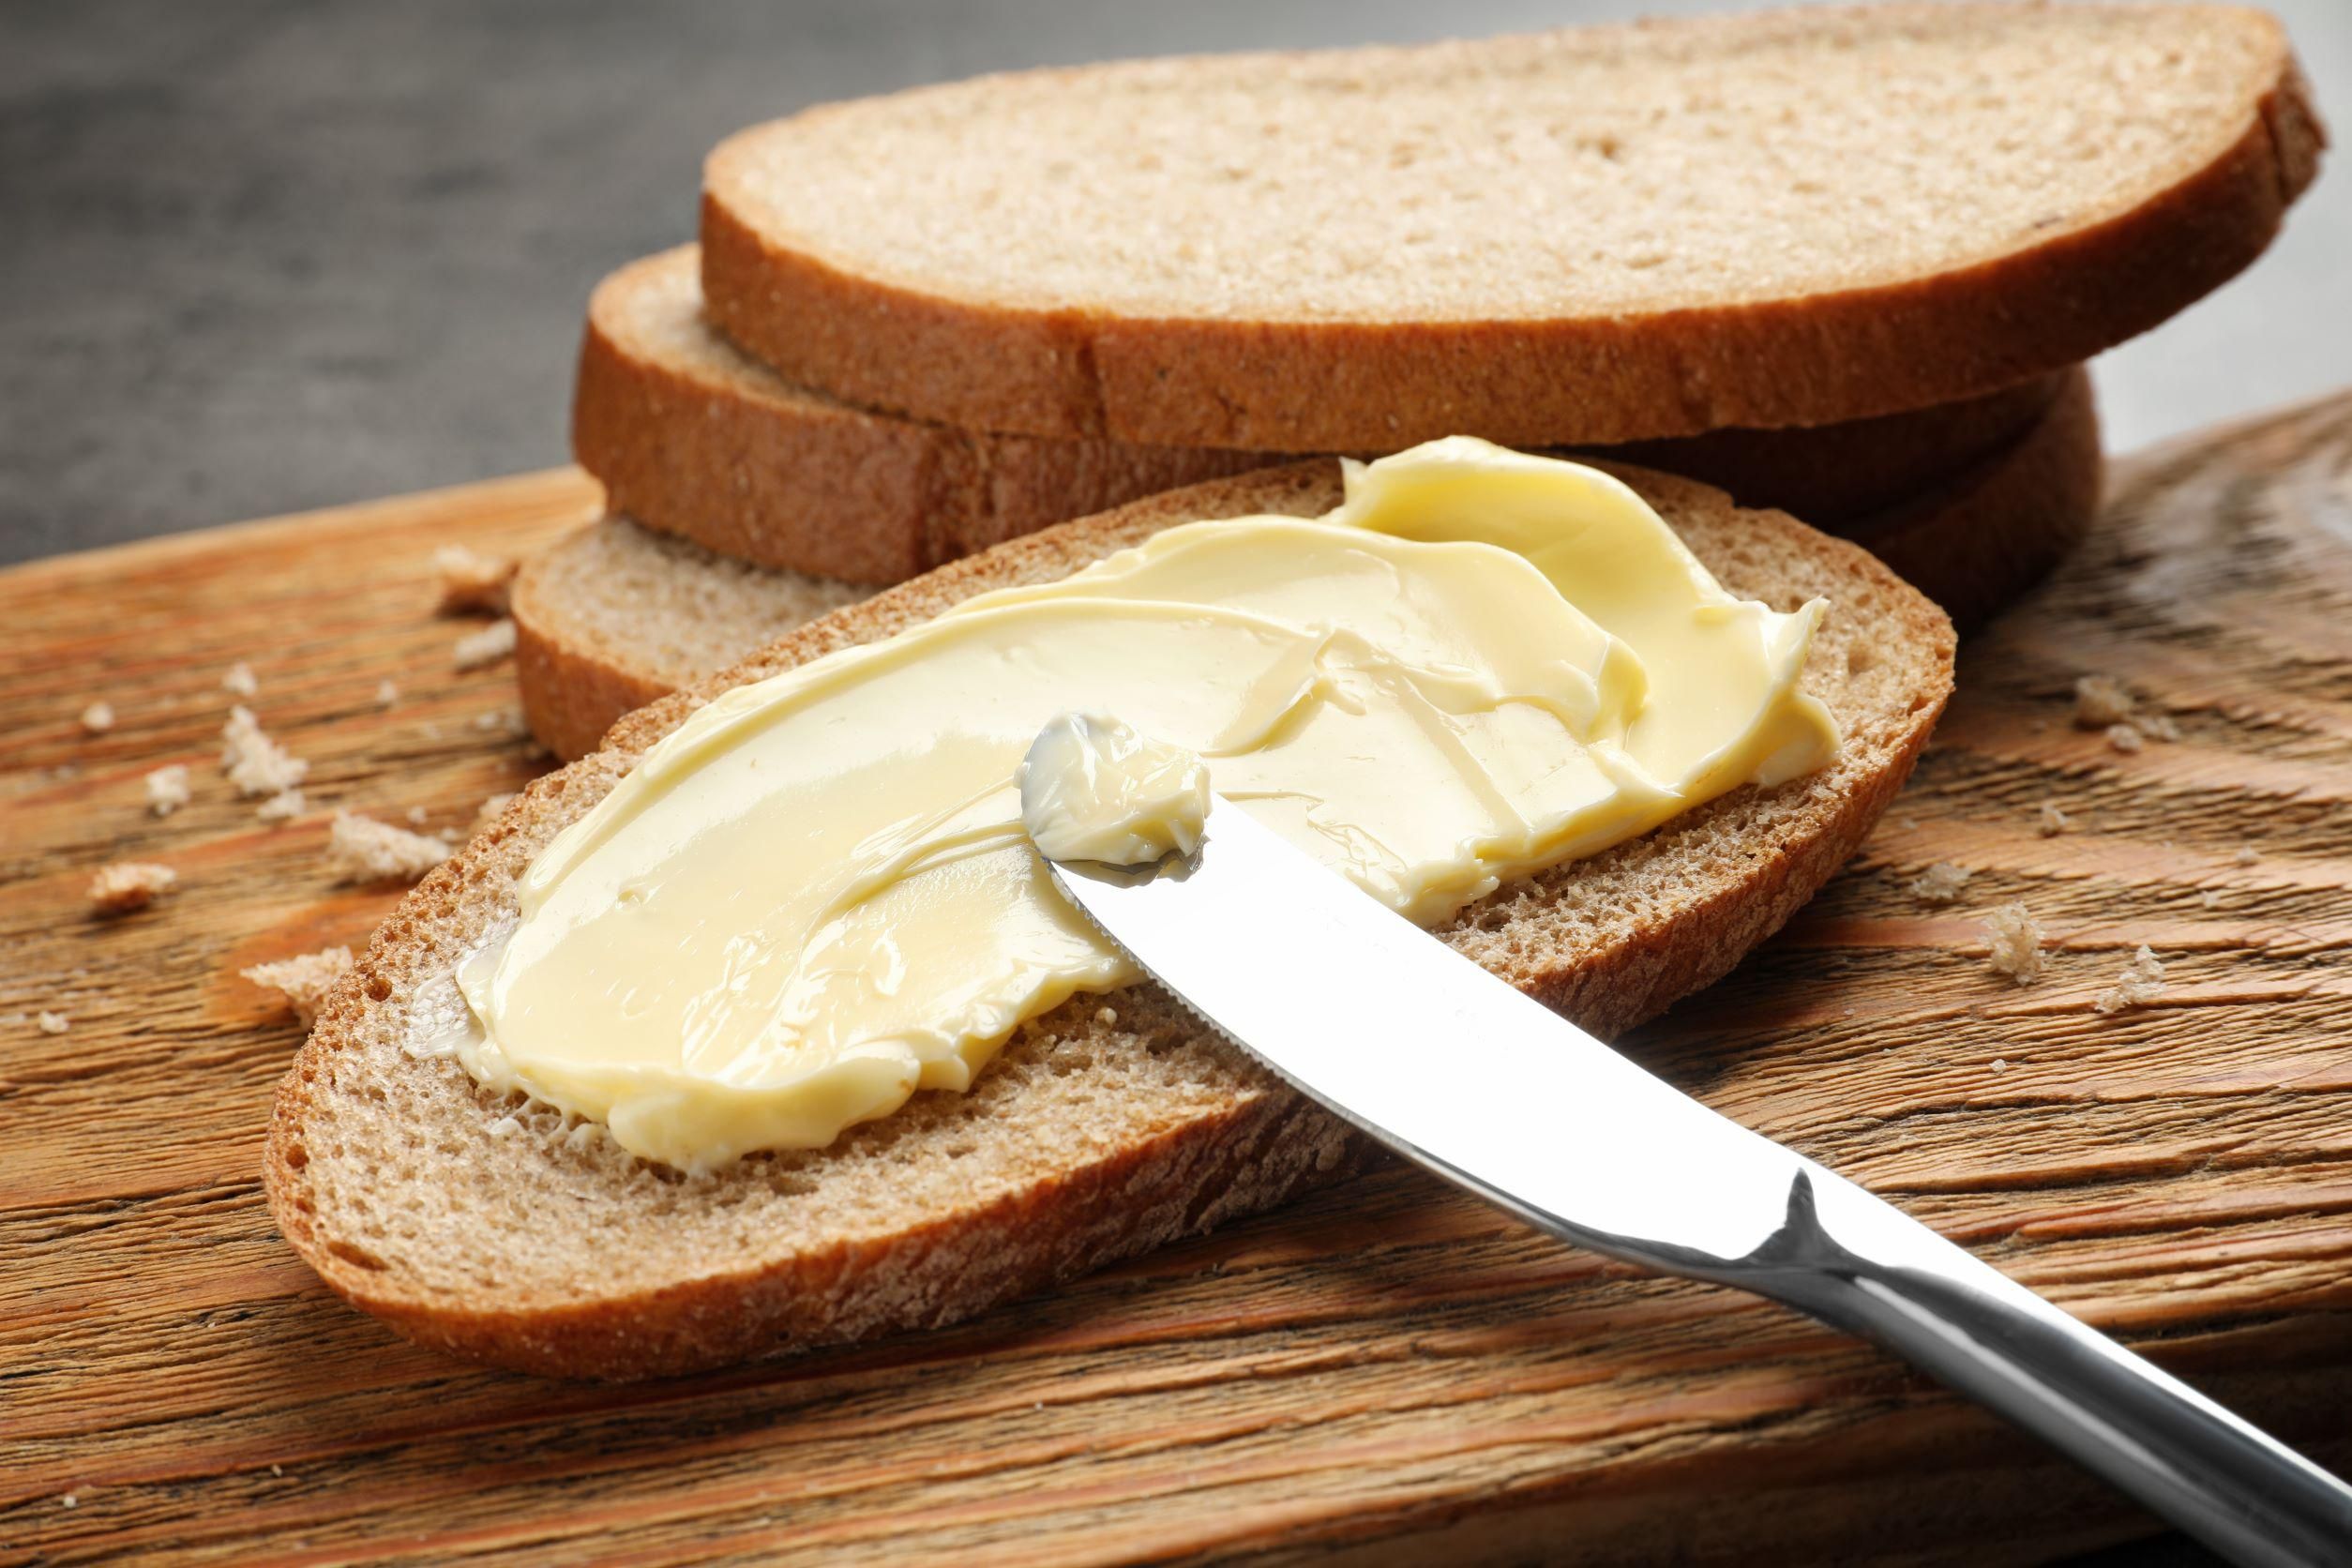 A Tej Terméktanács szerint egy margarin tévesztheti meg a fogyasztókat